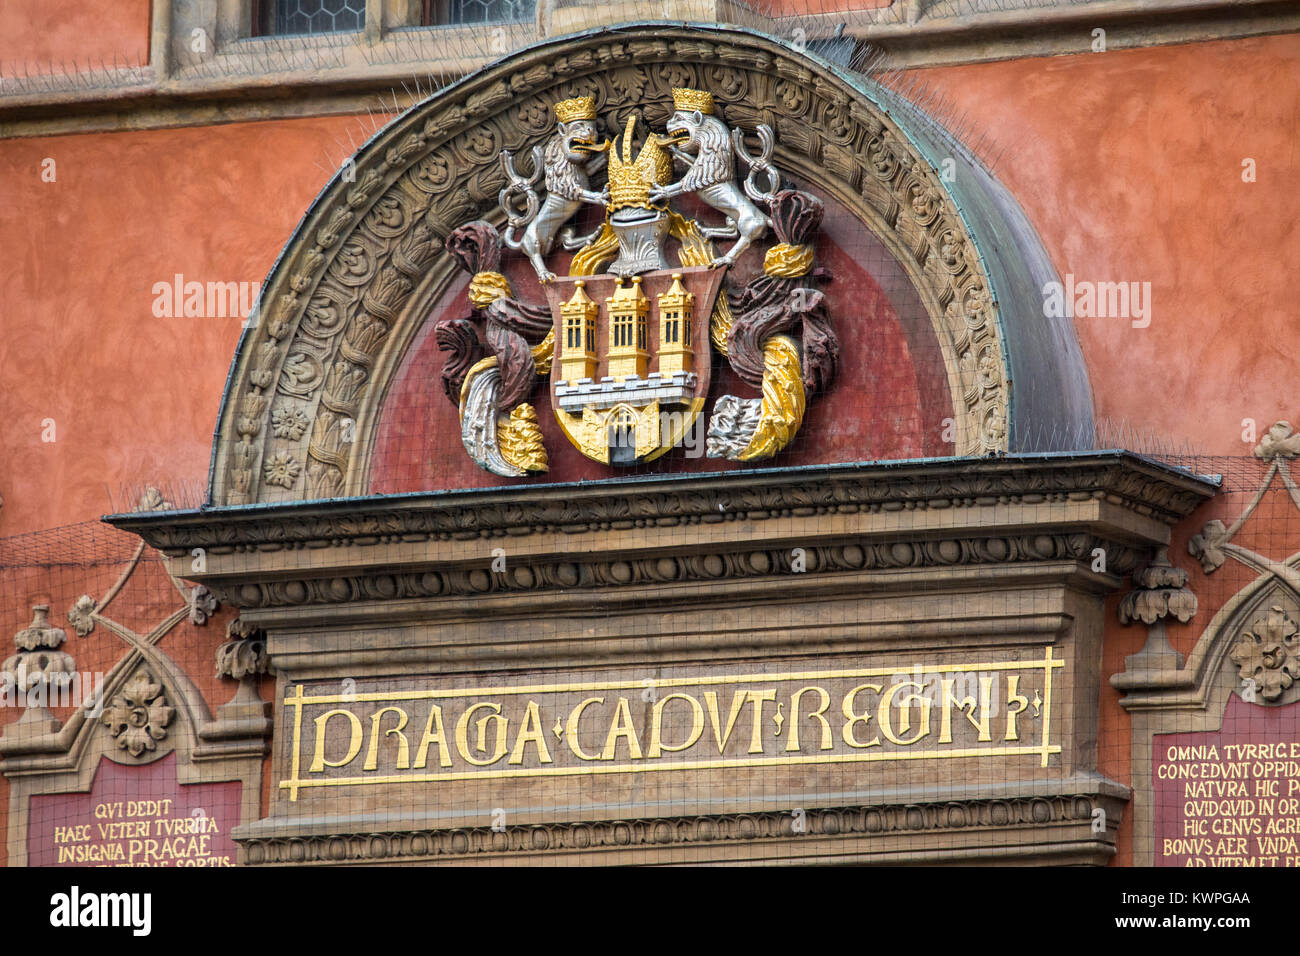 Magnifiquement sculpté les armoiries de la ville de Prague. Situé sur un immeuble à la place de la Vieille Ville à Prague, en République tchèque. Banque D'Images